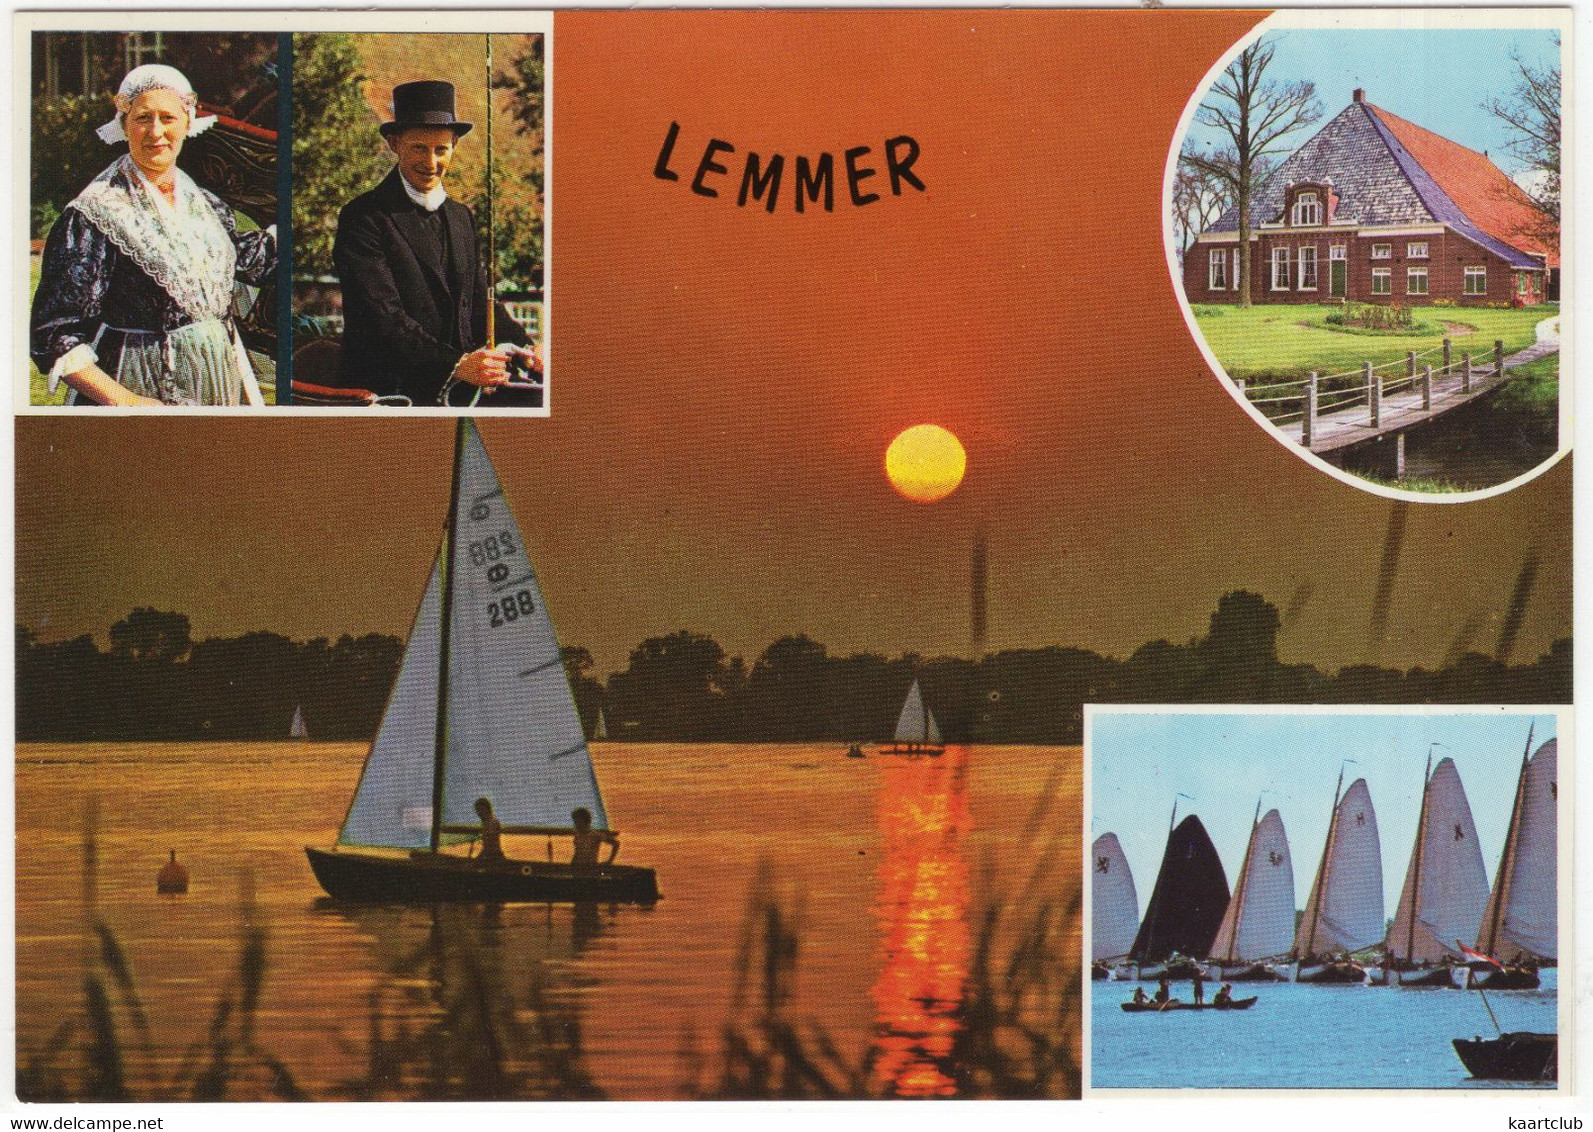 Lemmer - Zeilboten, Klederdracht, Boerderij, Skutsjes, Avondzon - (Nederland - Holland) - Lemmer